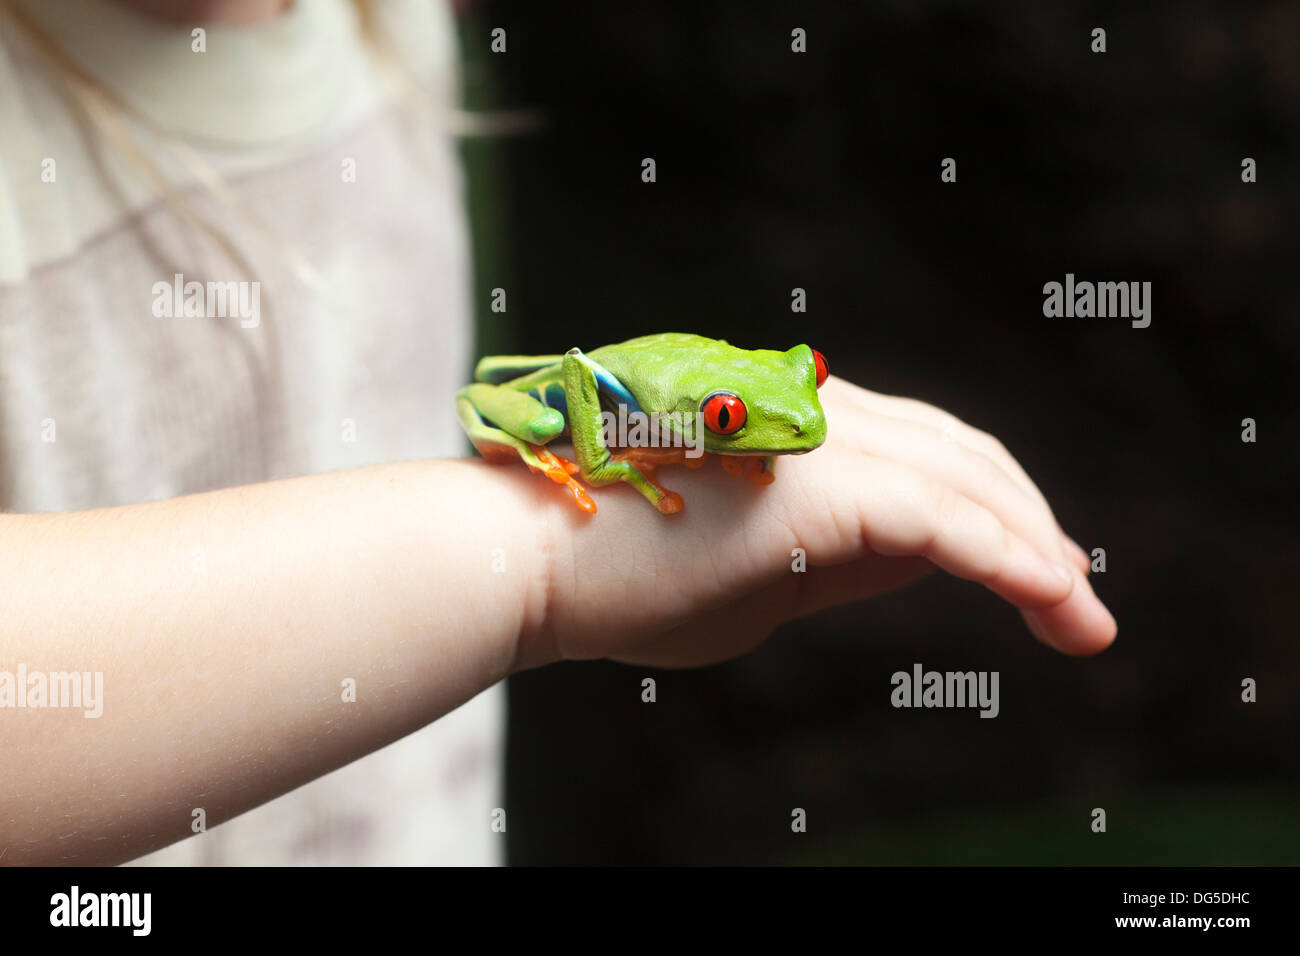 Rana arbórea de ojos rojos (Agalychnis callidyas) en la mano de una chica Foto de stock